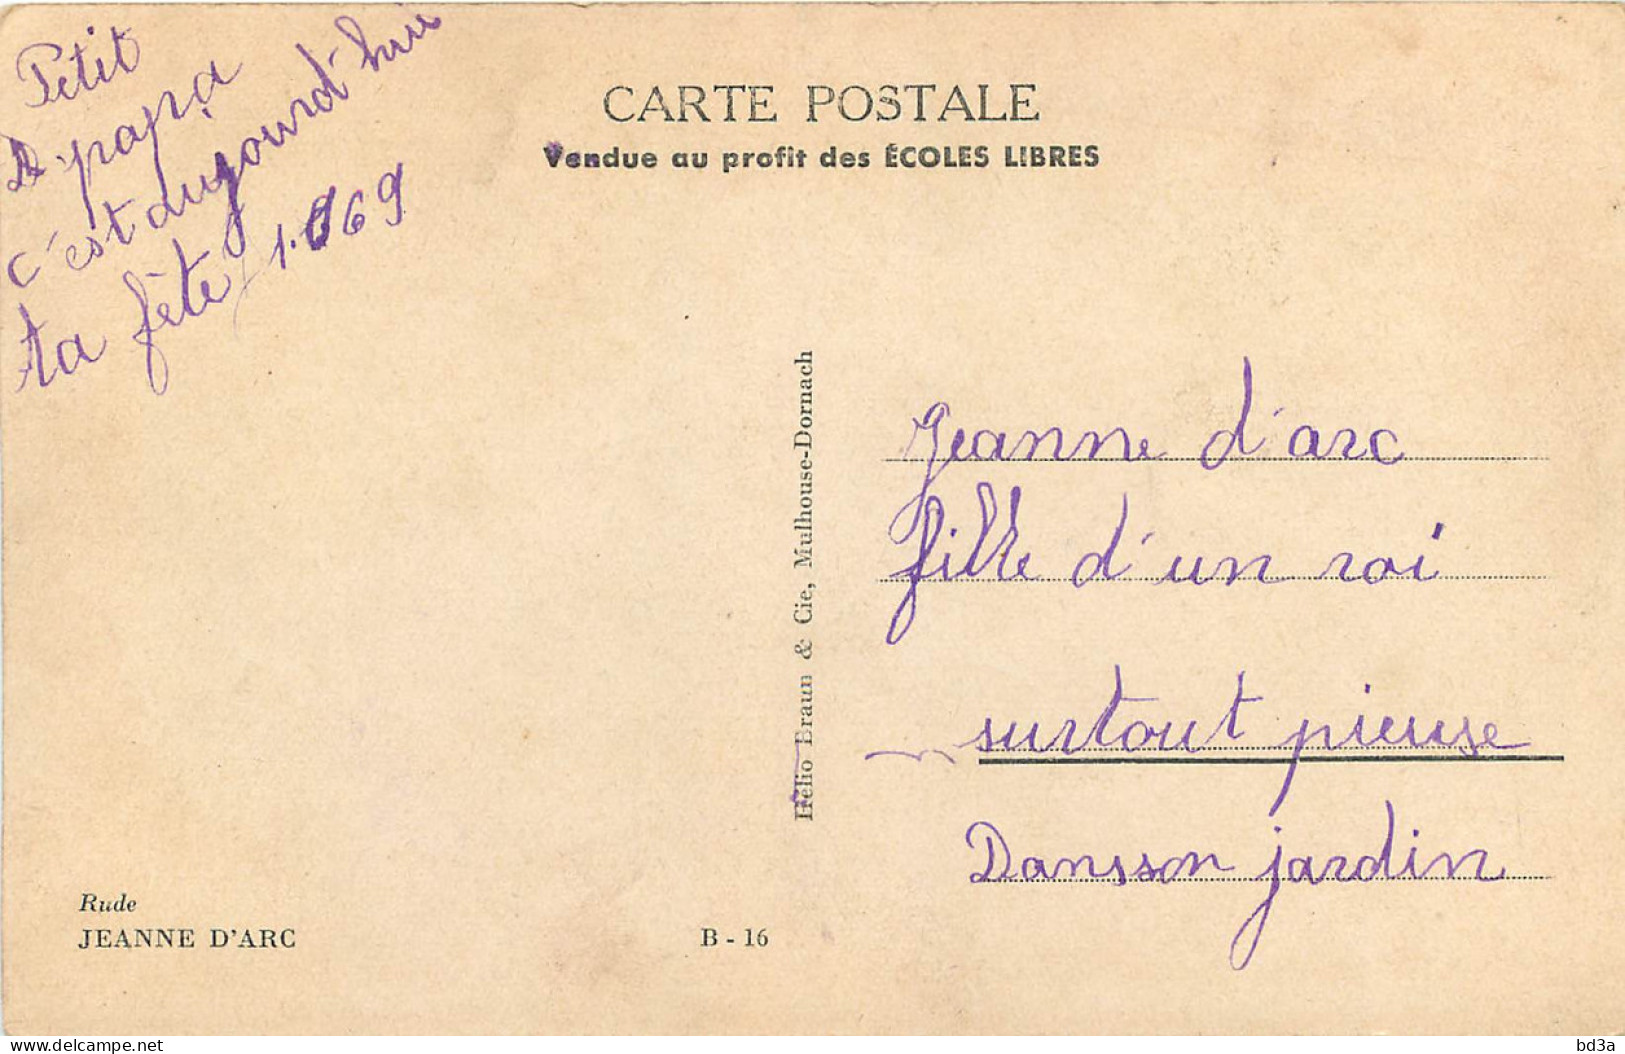 JEANNE D'ARC - RUDE - Personnages Historiques